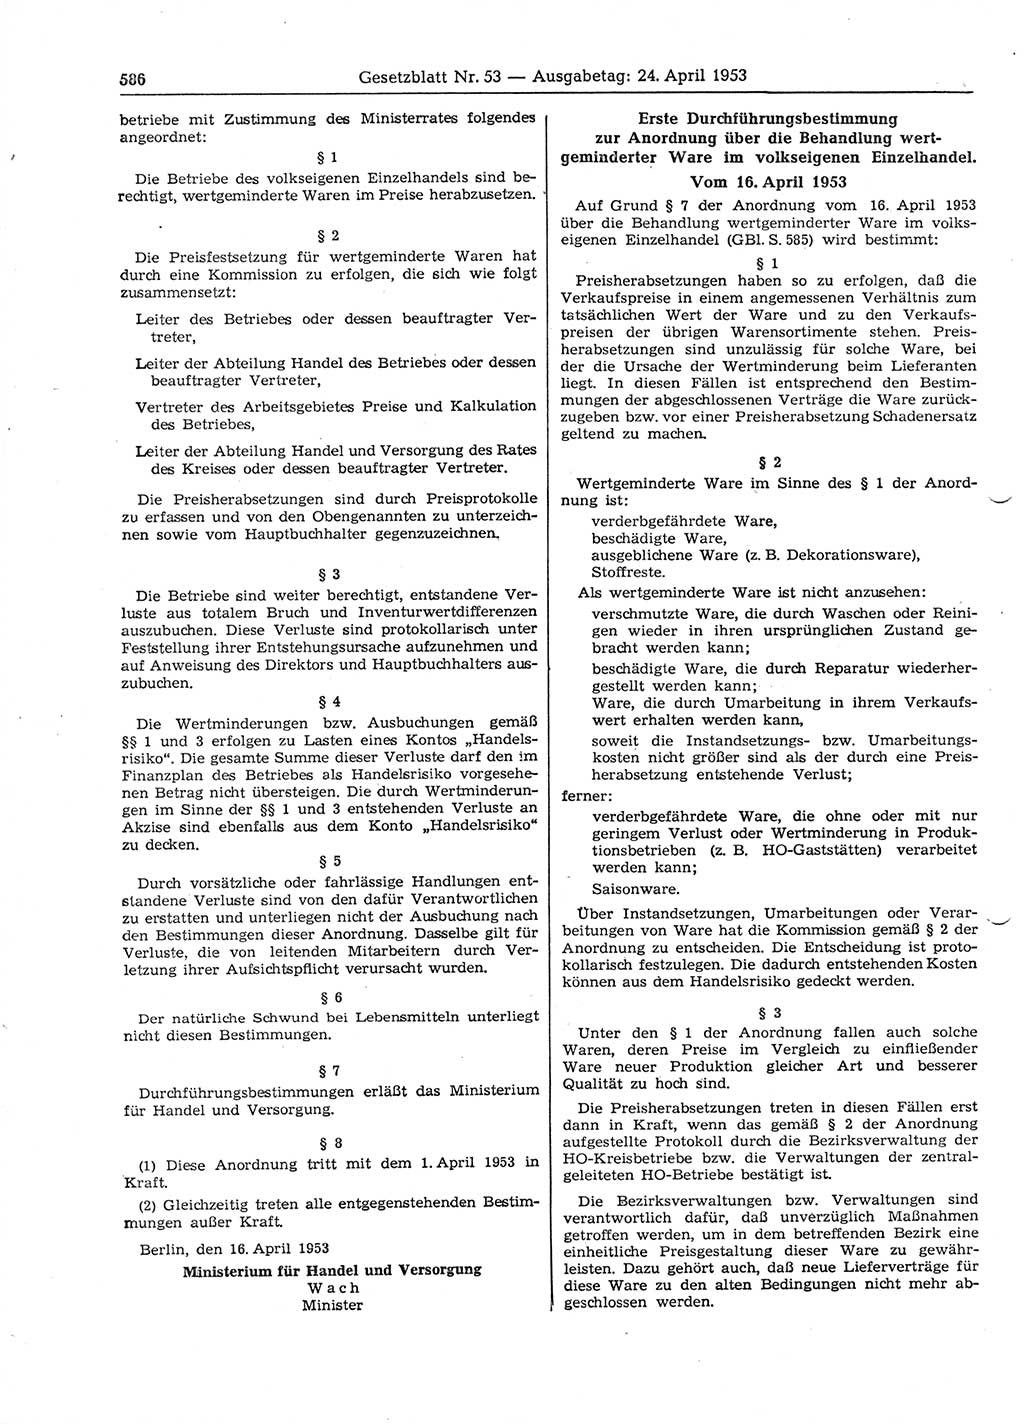 Gesetzblatt (GBl.) der Deutschen Demokratischen Republik (DDR) 1953, Seite 586 (GBl. DDR 1953, S. 586)